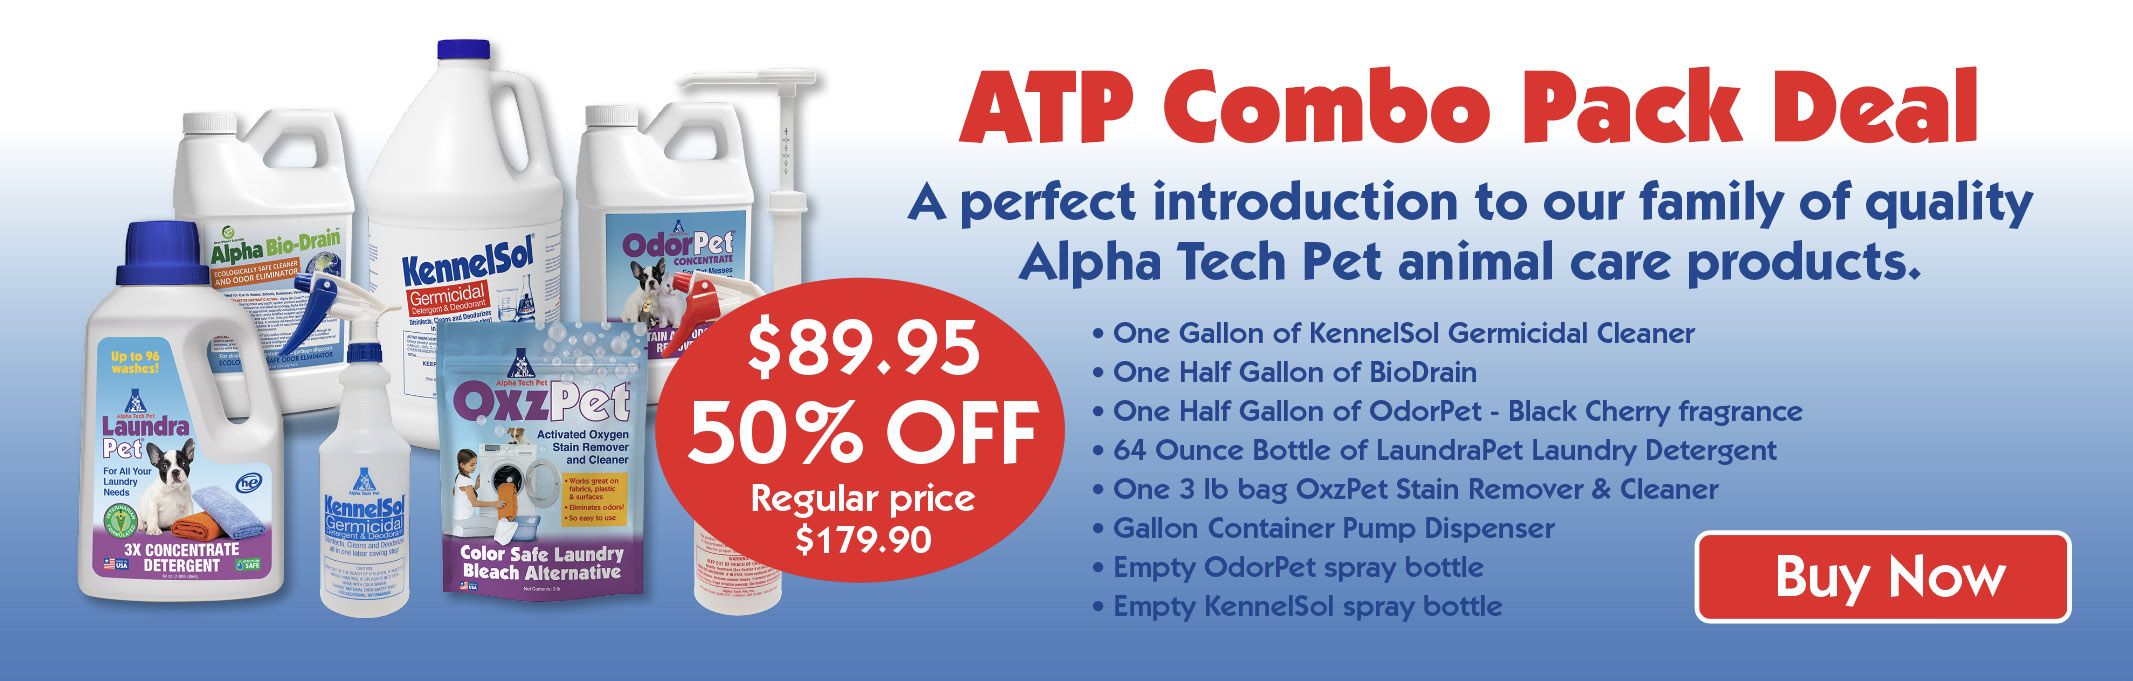 Alpha Tech Pet combo pack offer